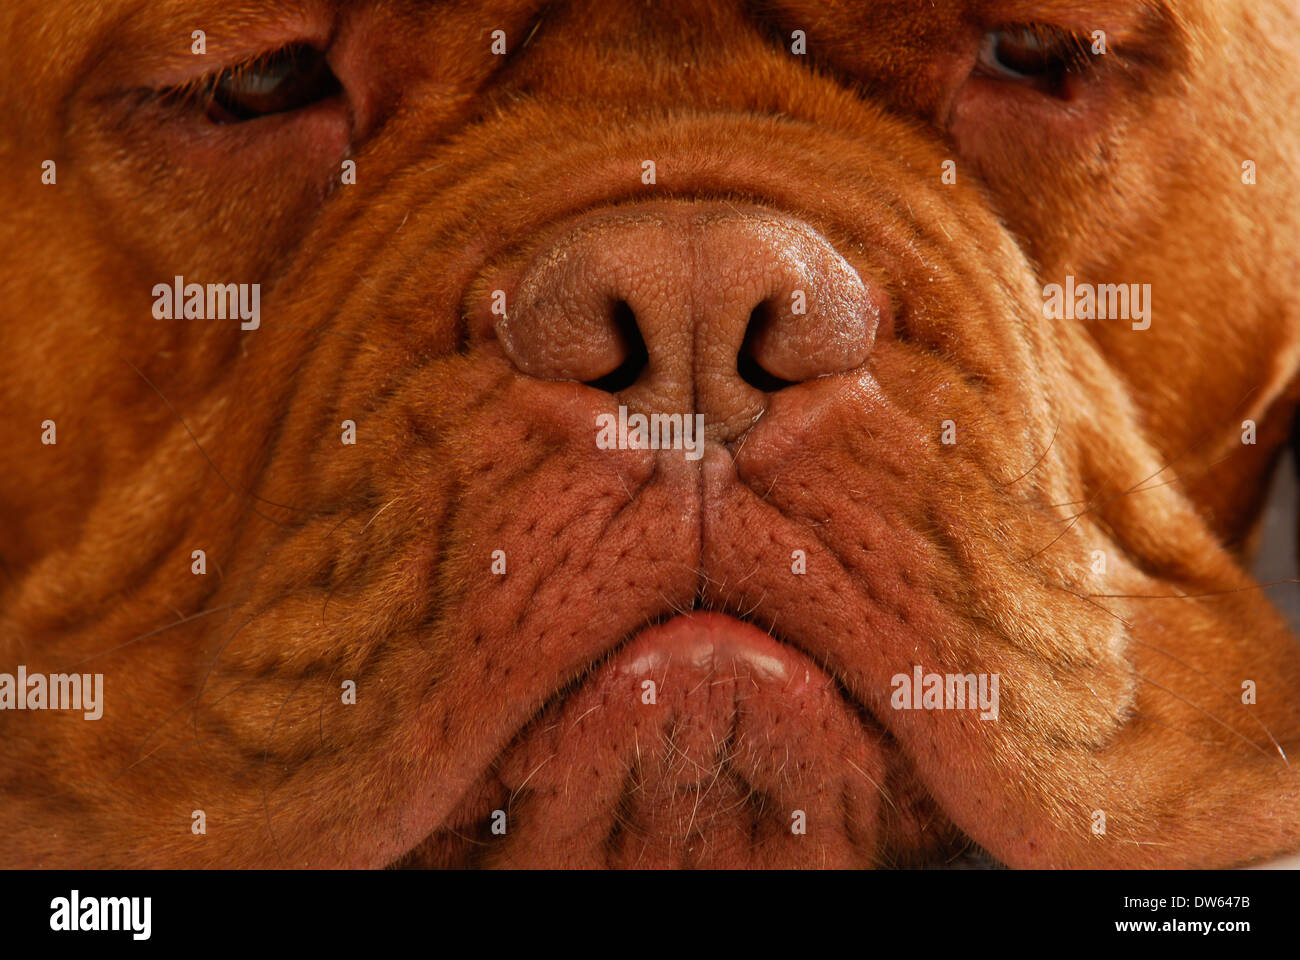 Naso di cane - Dogue de Bordeaux naso Foto Stock